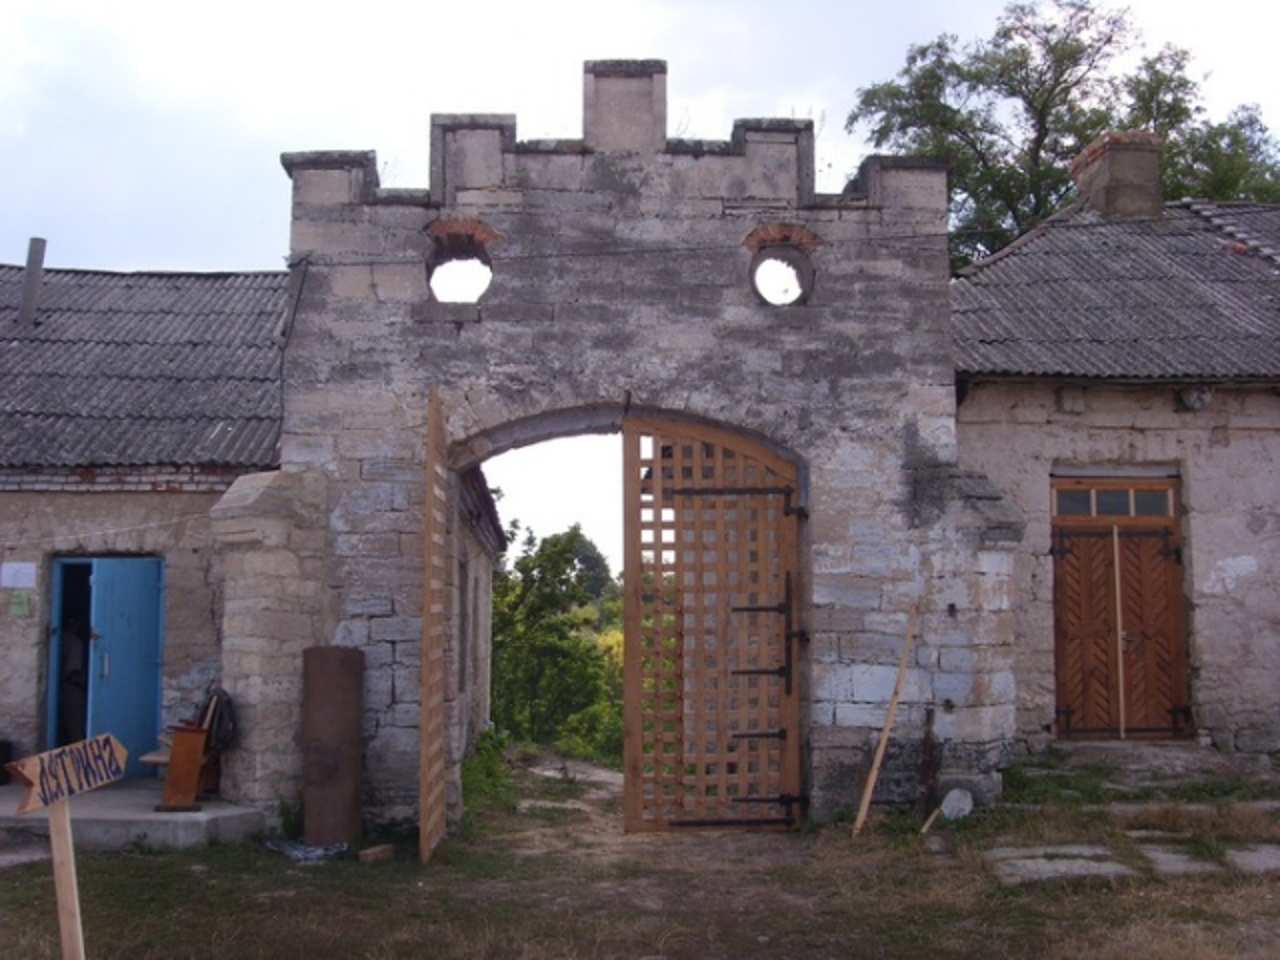 Stsybor-Markhotsky Manor, Otrokiv